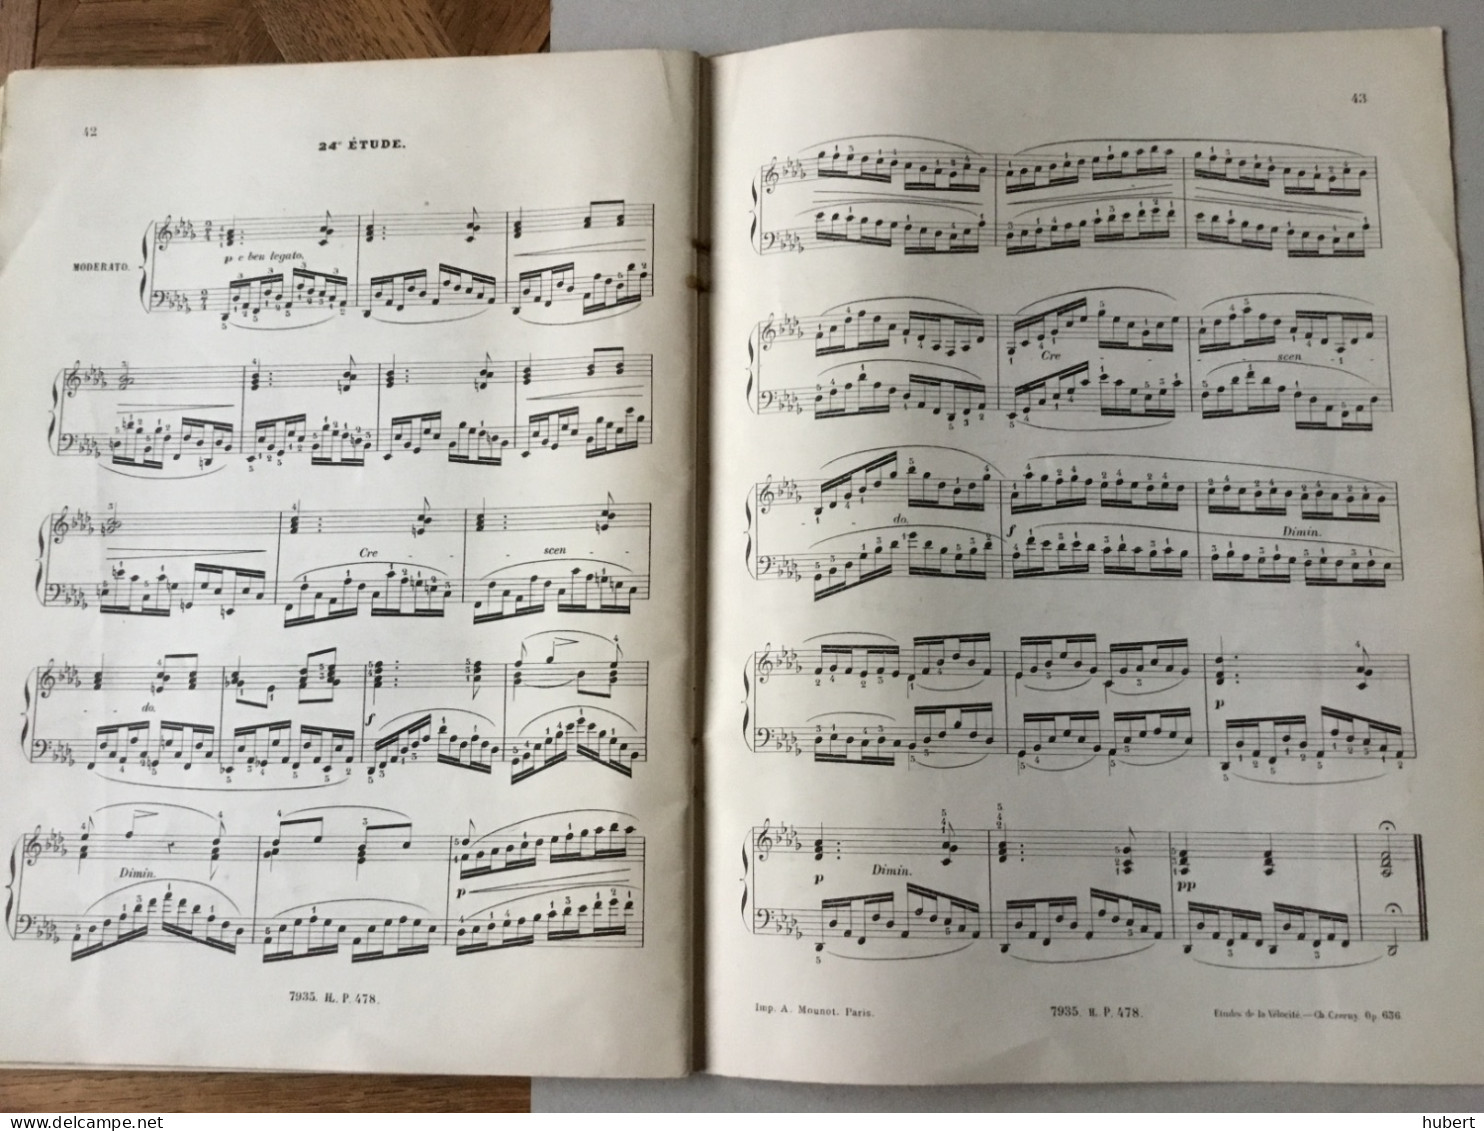 Panthéon Des Pianistes N° 478 Czerny - Musica